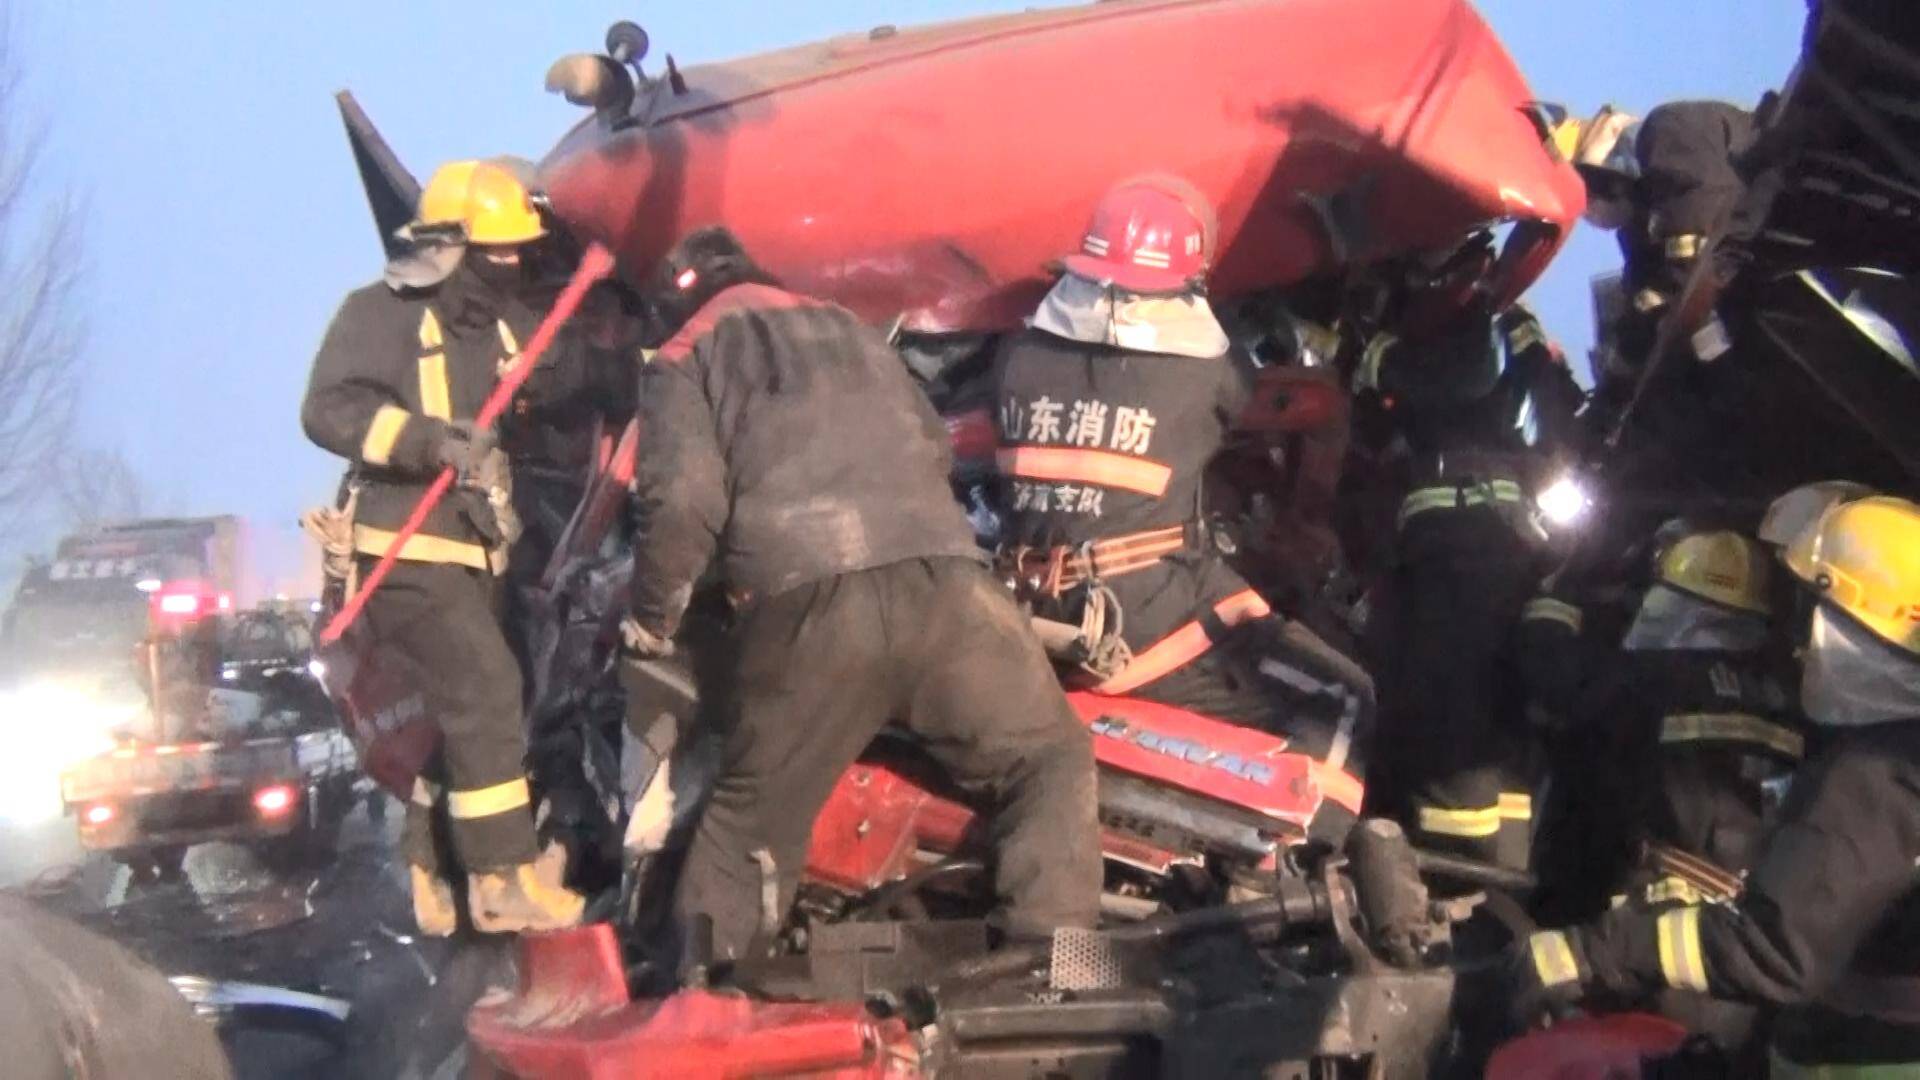 49秒丨济南市济阳区220国道两货车相撞 消防救援站出动16人赶赴现场救援